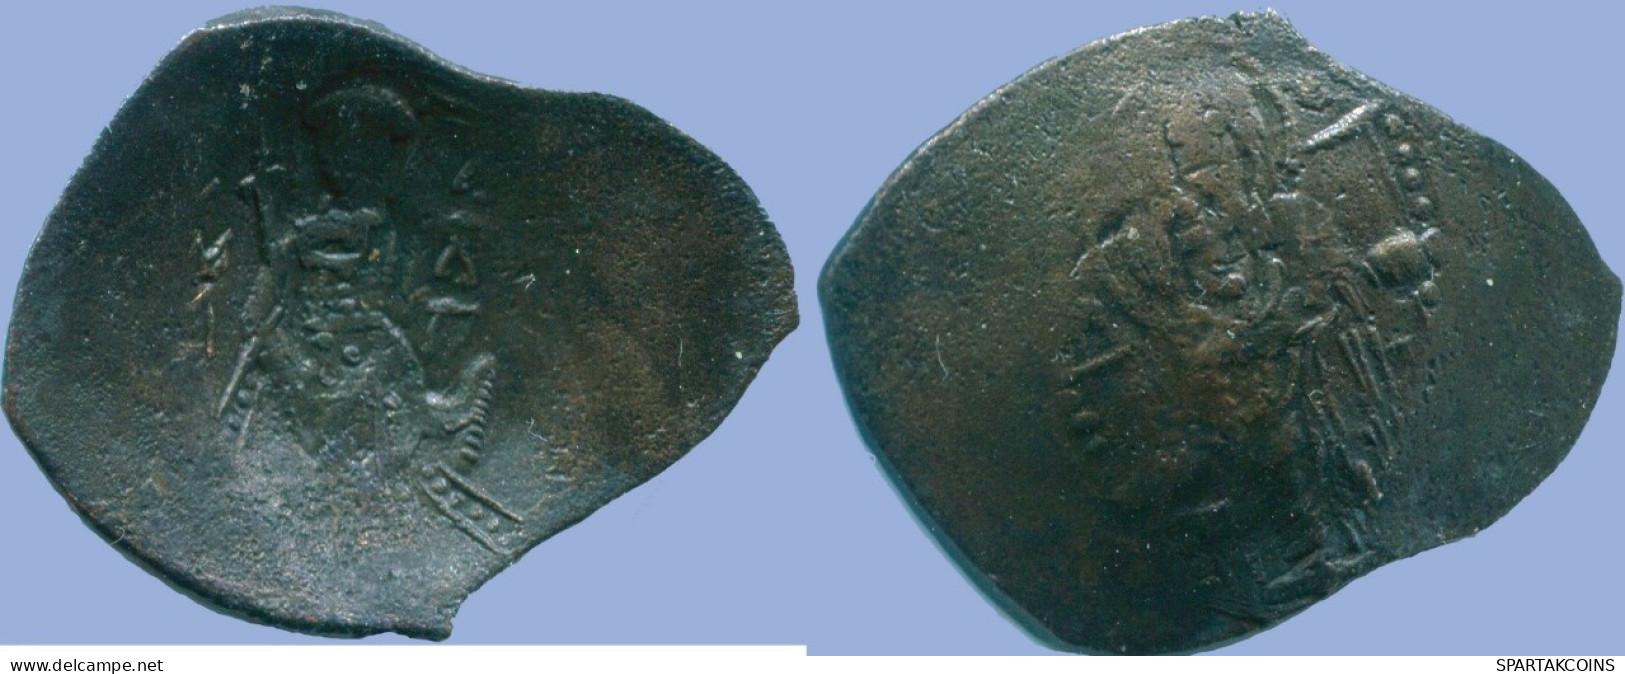 TRACHY BYZANTINISCHE Münze  EMPIRE Antike Münze2.99g/29.01mm #ANC13500.13.D.A - Byzantinische Münzen